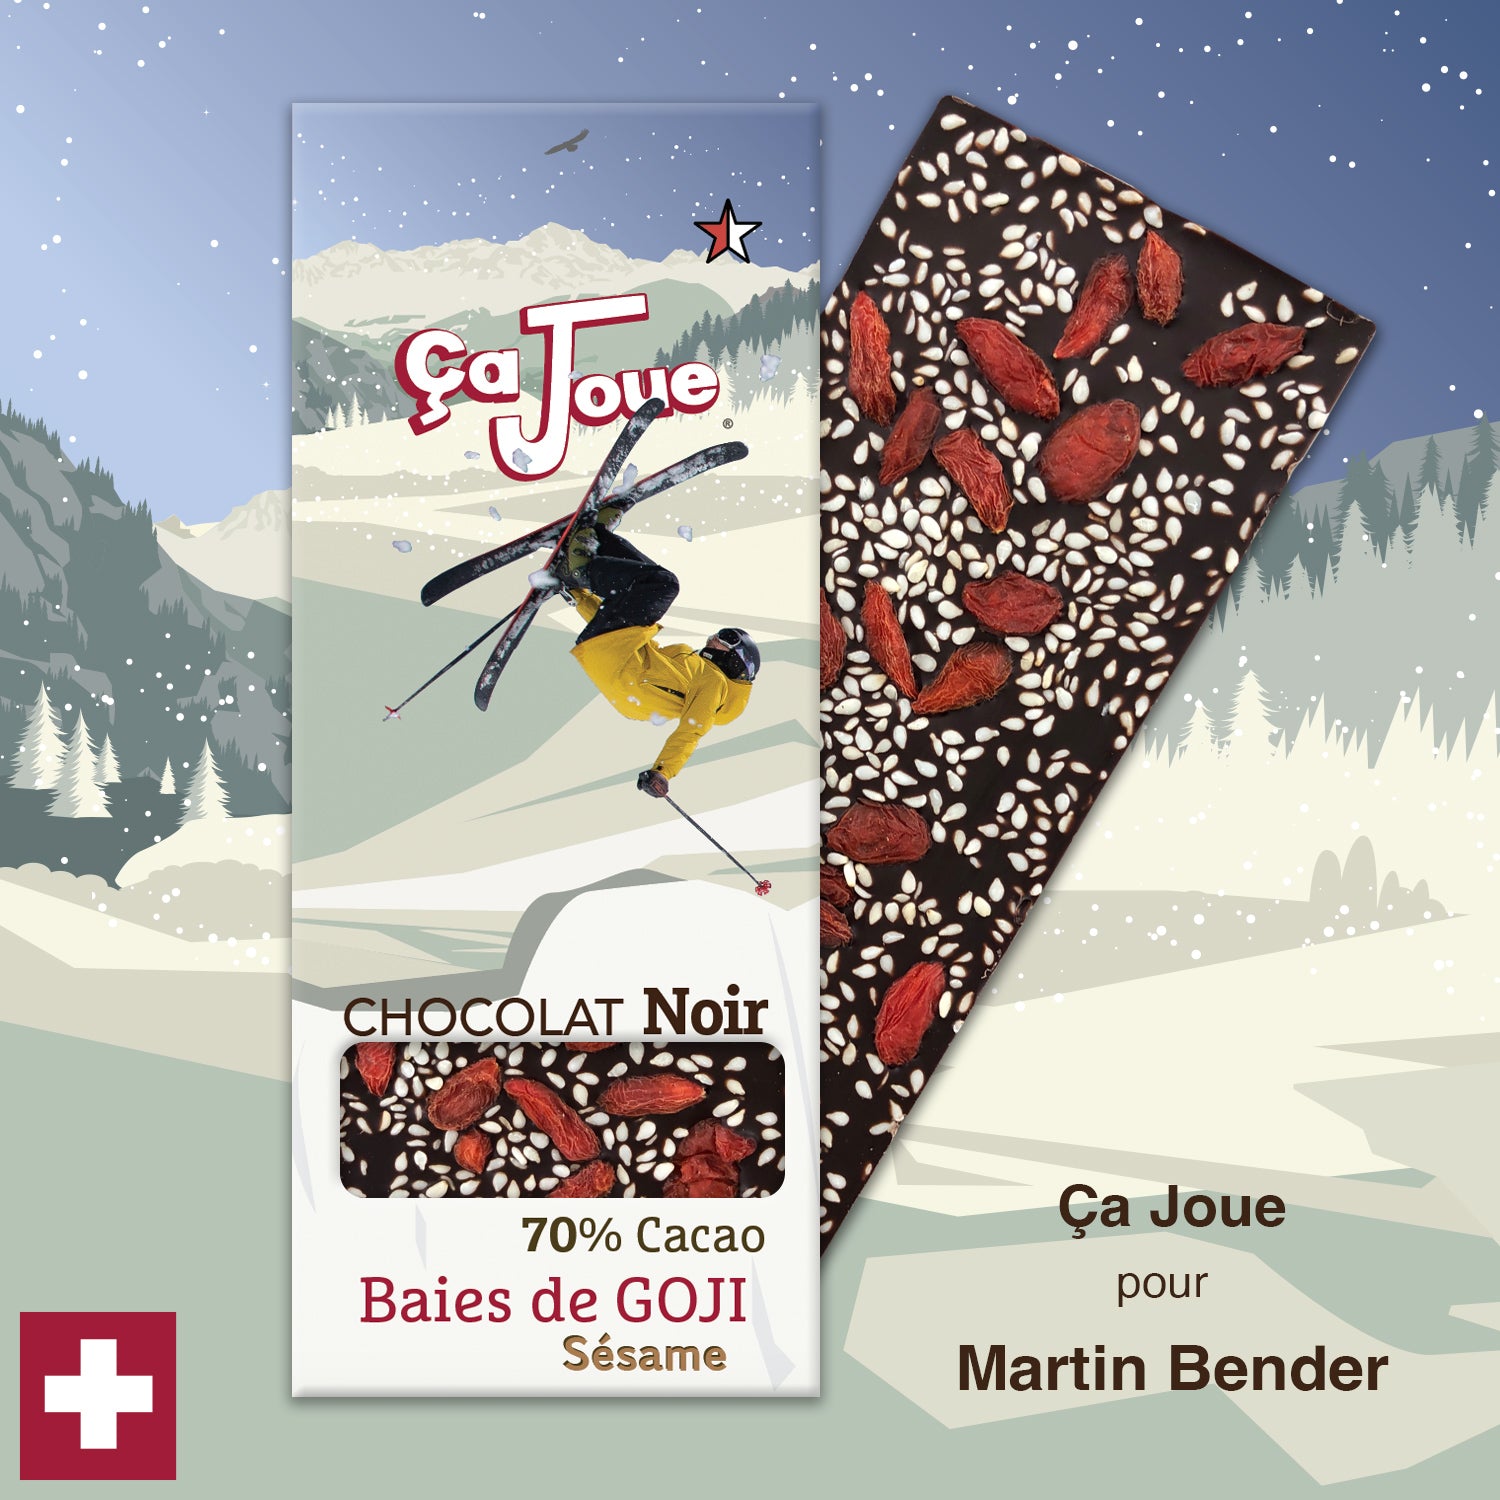 Ça Joue für Martin Bender (Ref-BN4) Schokolade aus Val de Bagnes